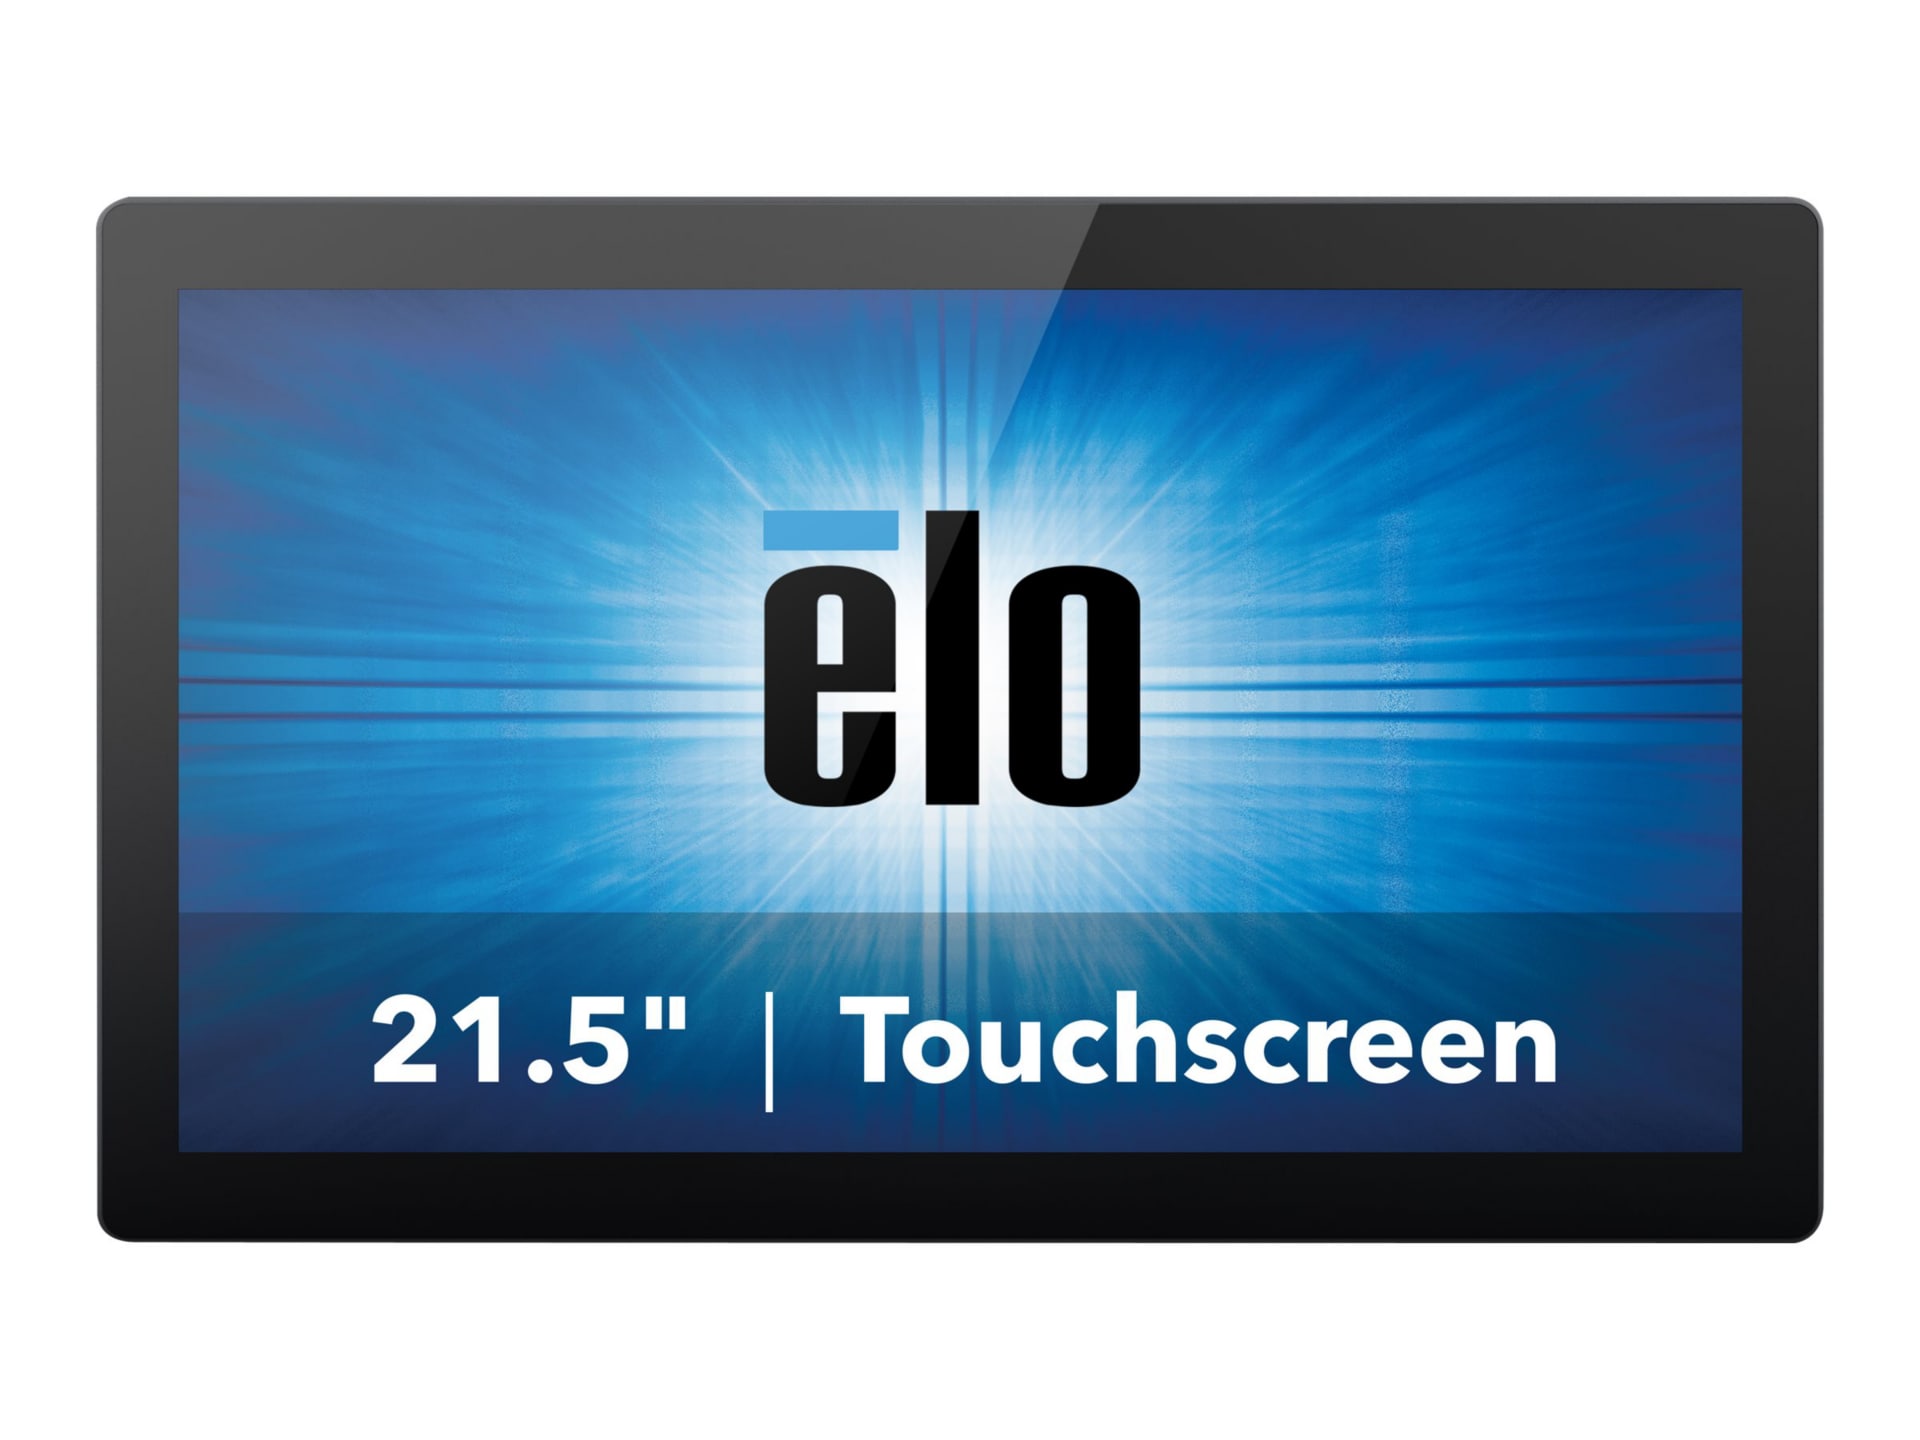 Elo Open-Frame Touchmonitors 2294L - Rev B - LED monitor - Full HD (1080p)